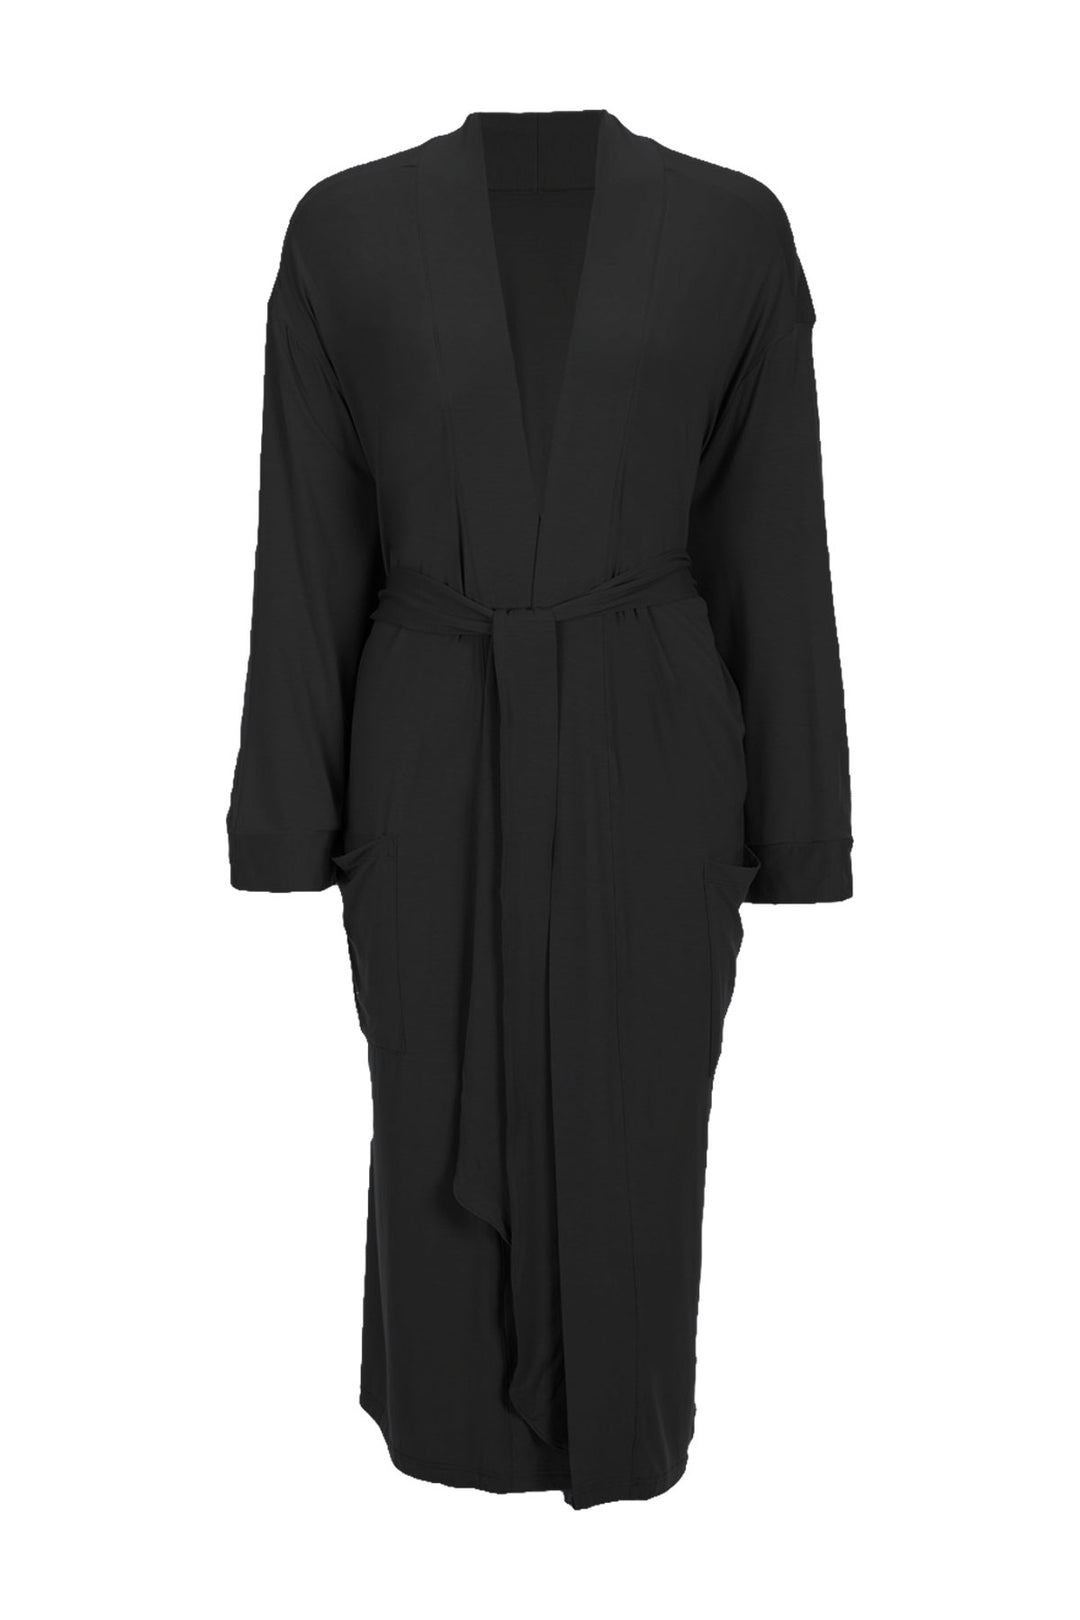 Zoe bamboo jersey robe in black